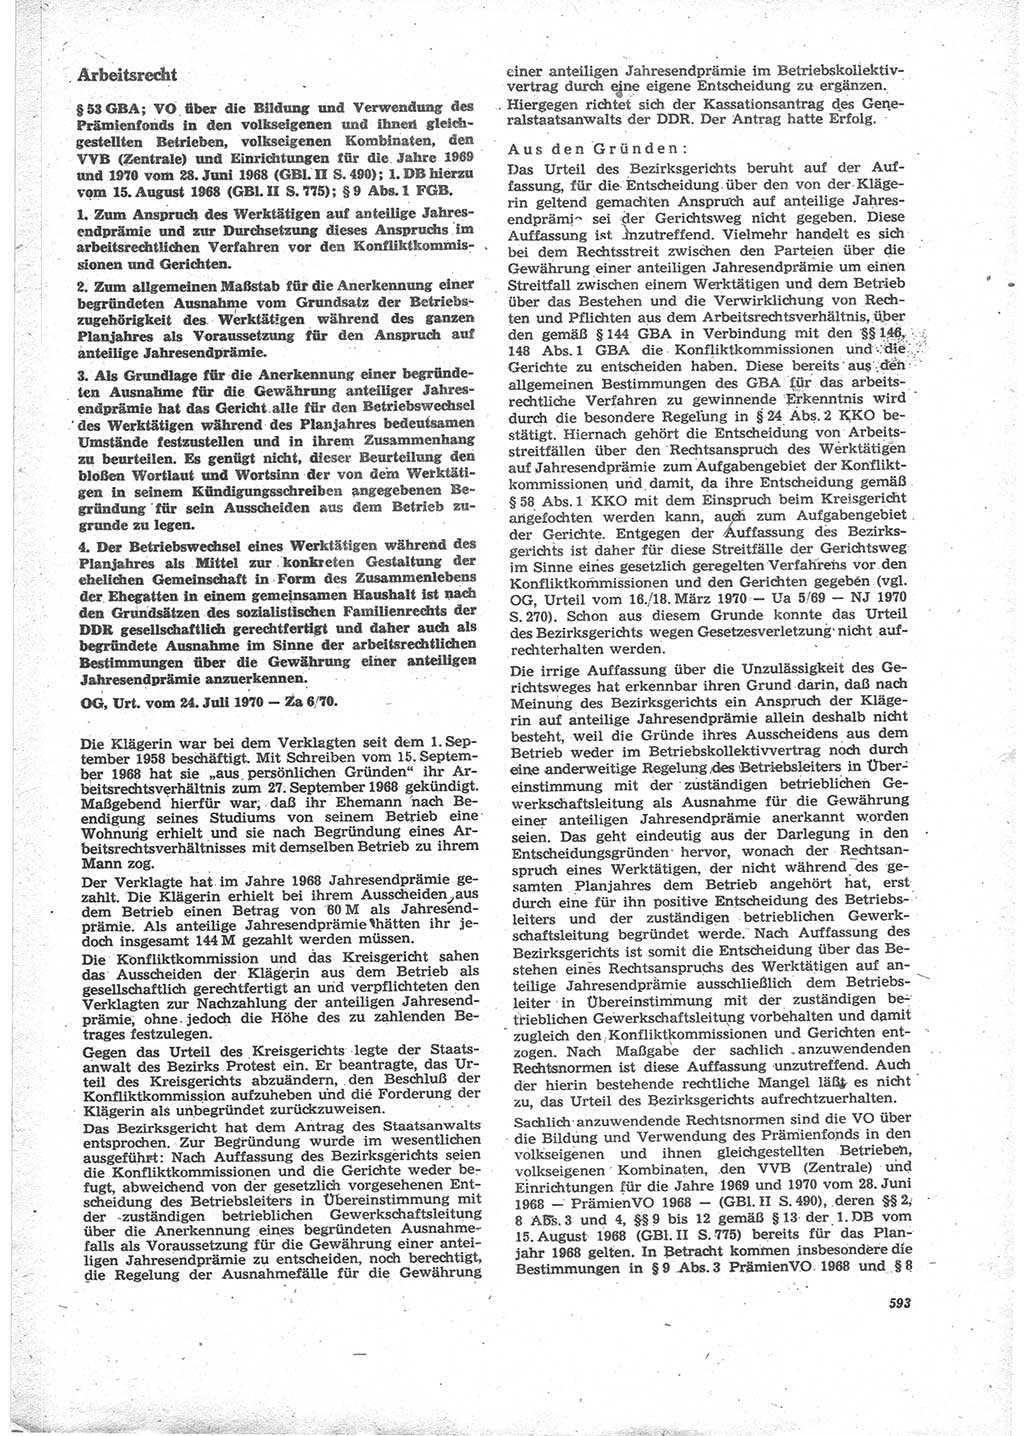 Neue Justiz (NJ), Zeitschrift für Recht und Rechtswissenschaft [Deutsche Demokratische Republik (DDR)], 24. Jahrgang 1970, Seite 593 (NJ DDR 1970, S. 593)